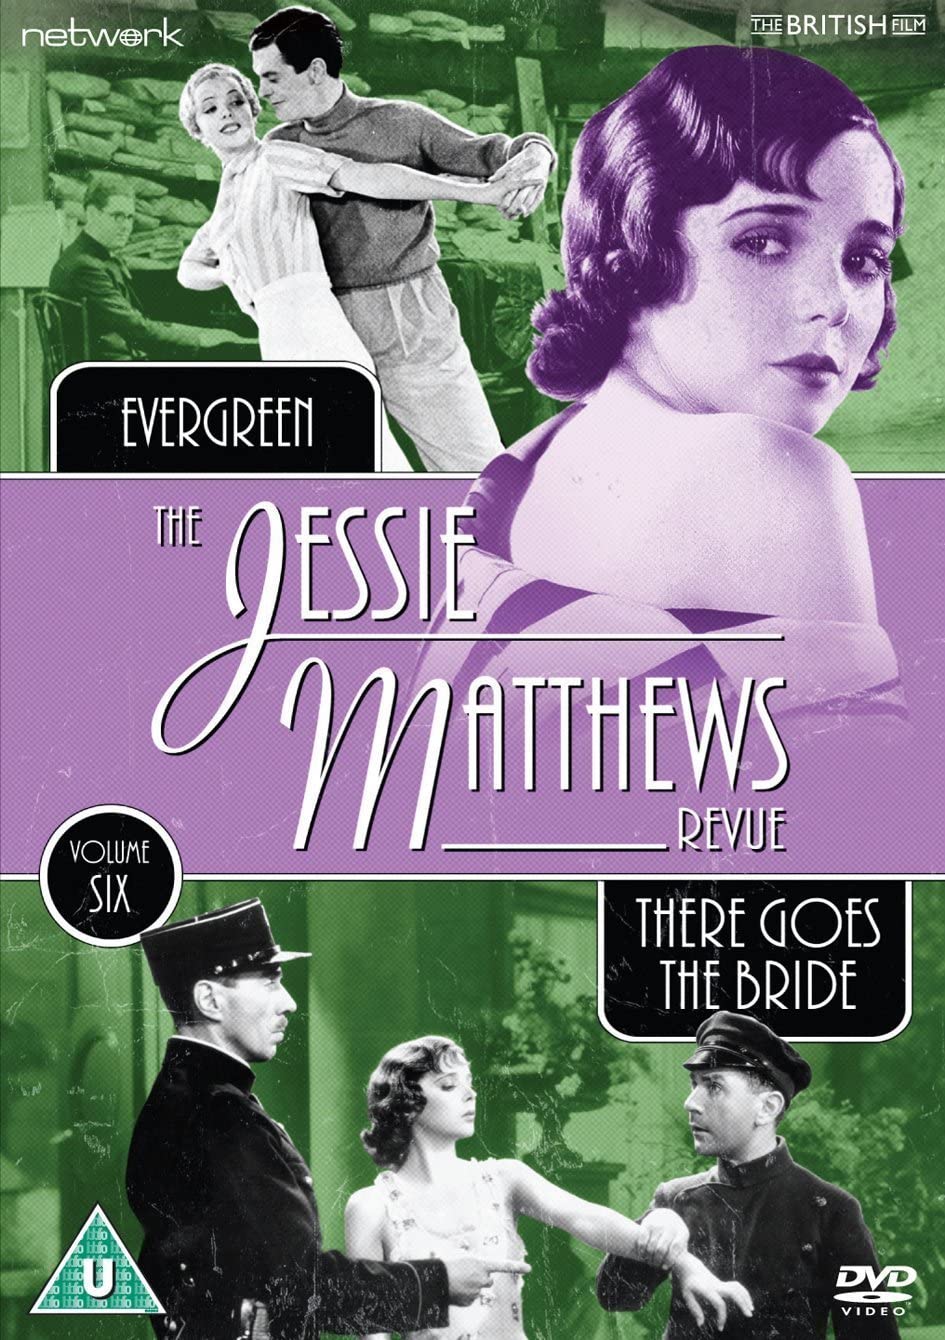 The Jessie Matthews Revue: Volume 6 [DVD]